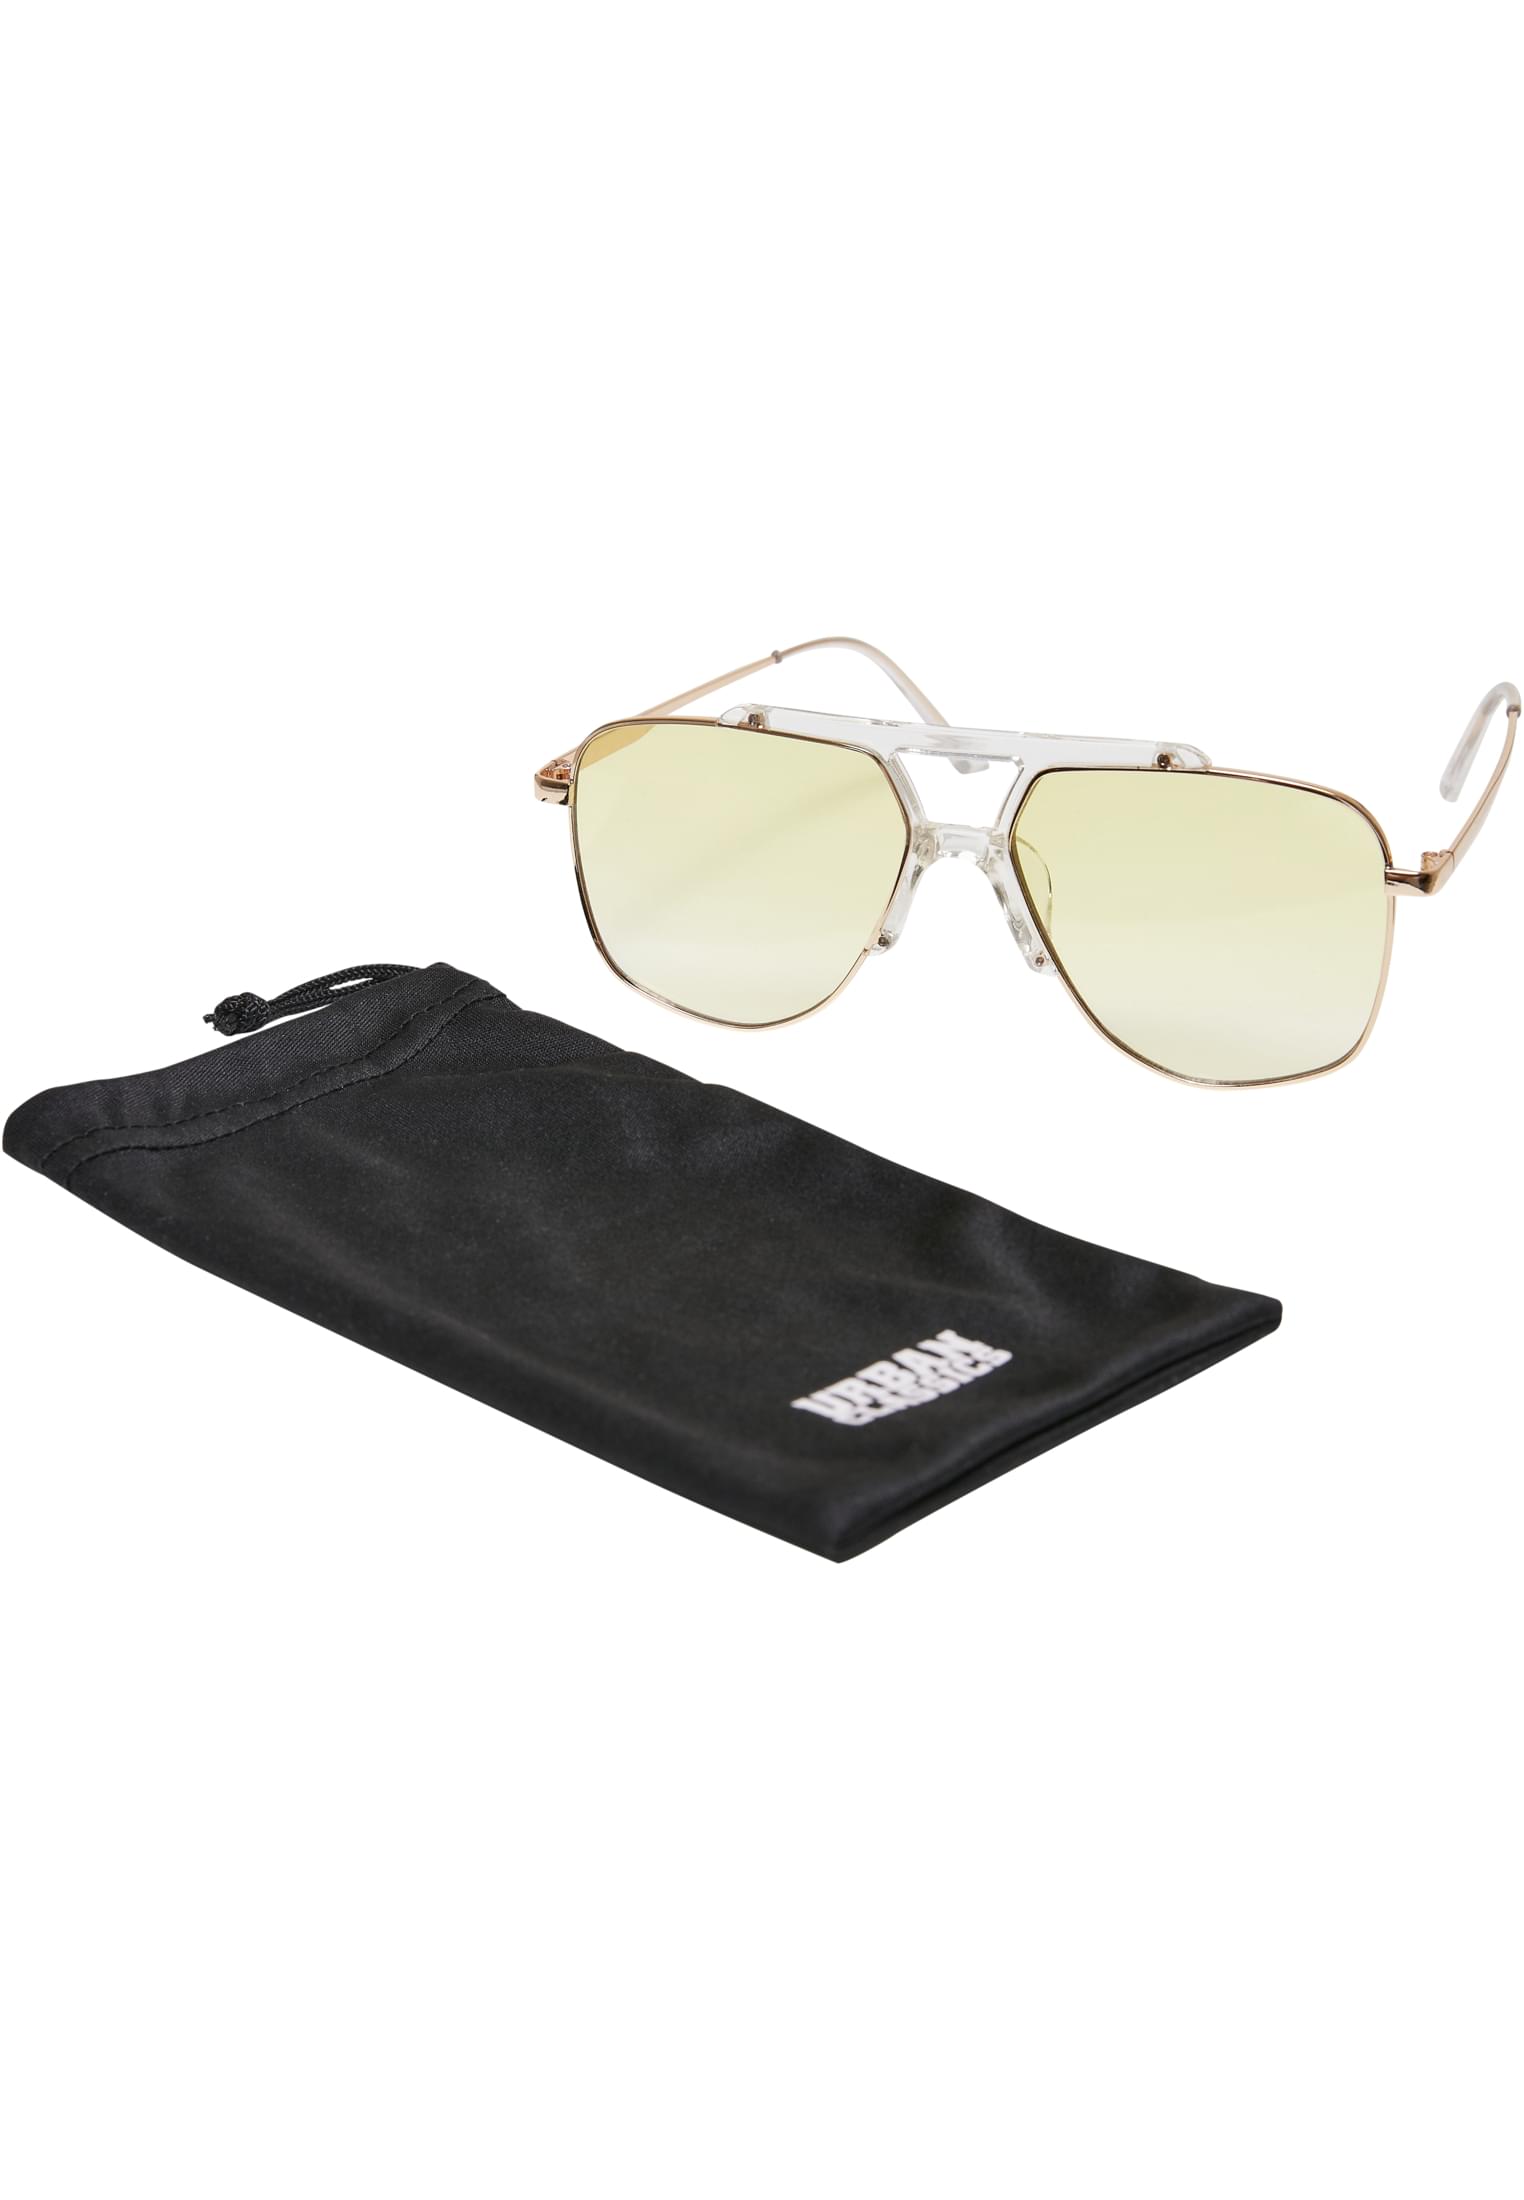 Saint Tropez sunglasses transparent/gold